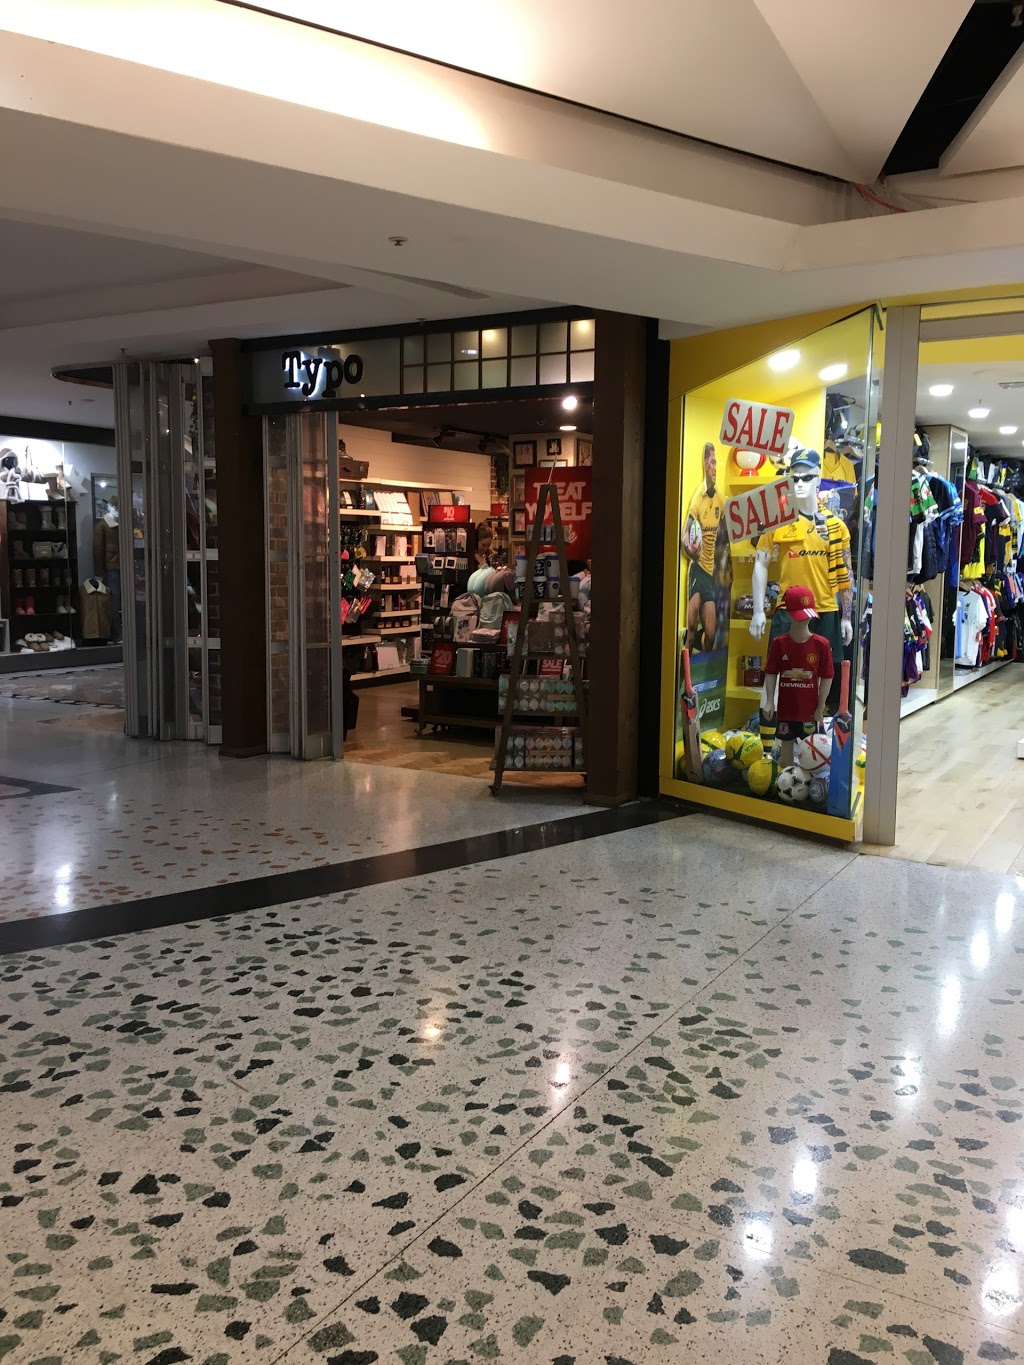 typo store locations australia